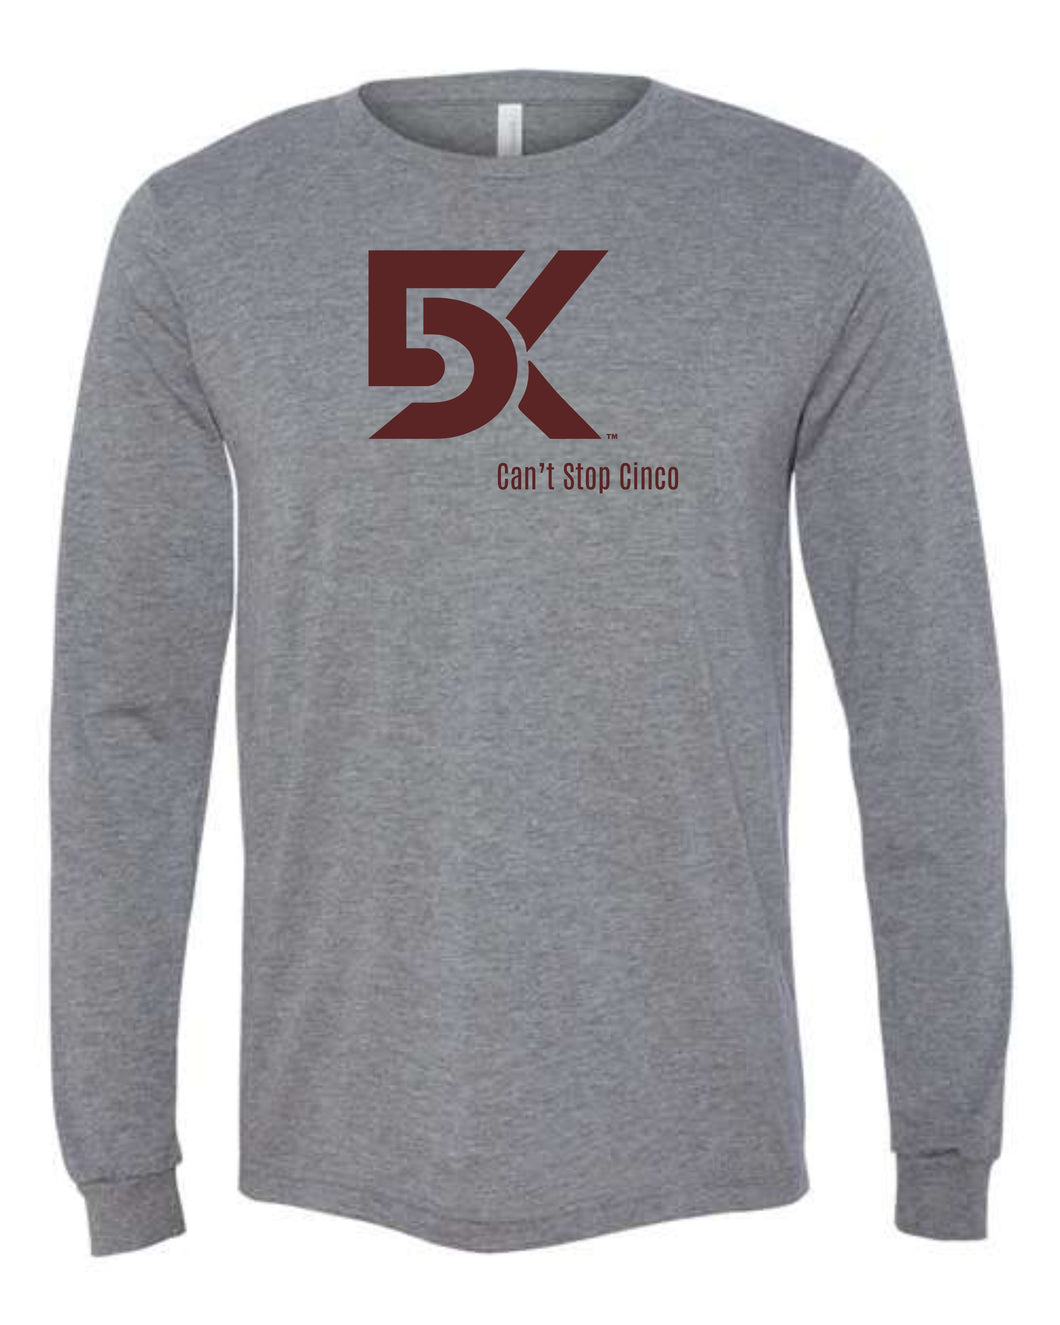 DK5 Long sleeve shirt